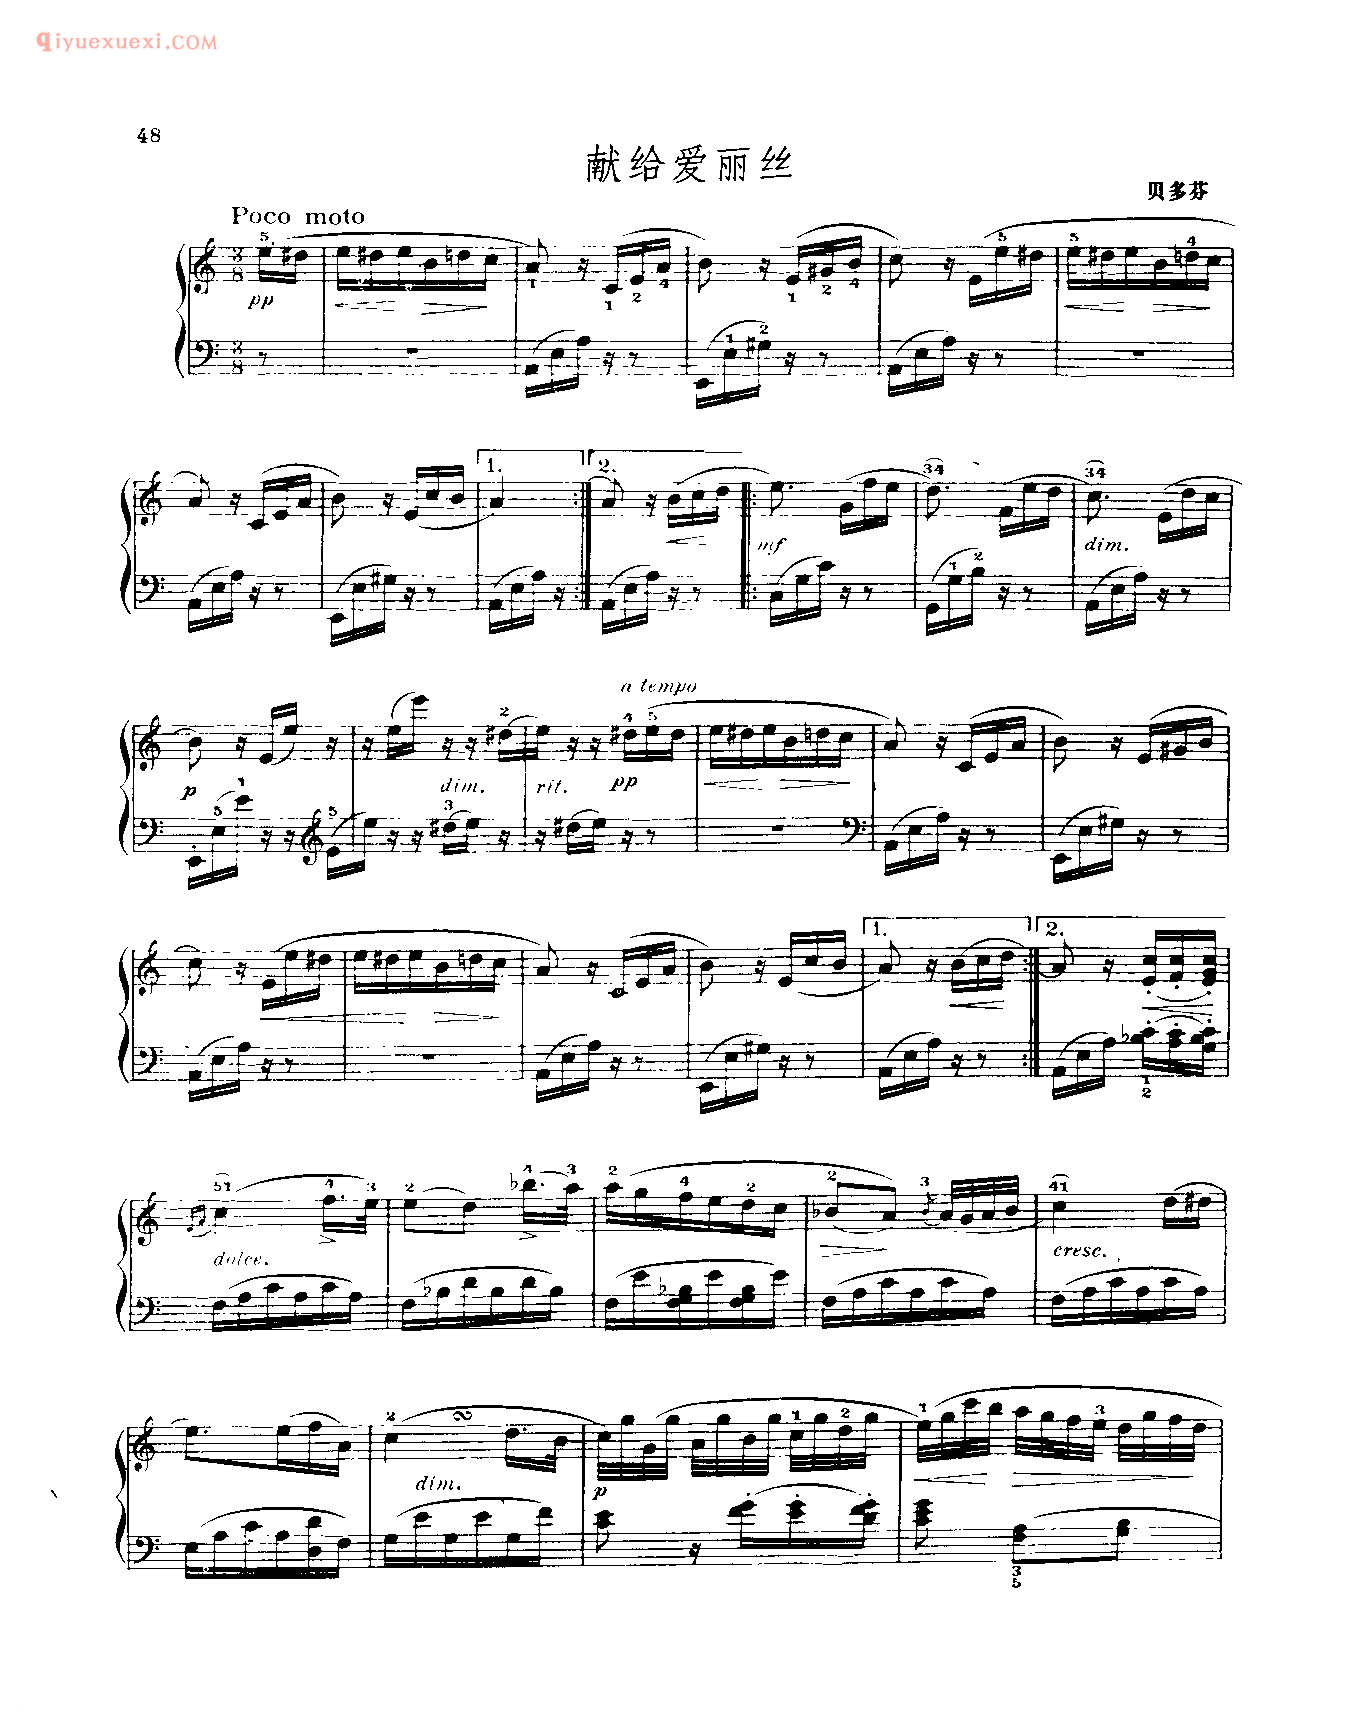 世界钢琴名曲谱_献给爱丽丝_贝多芬